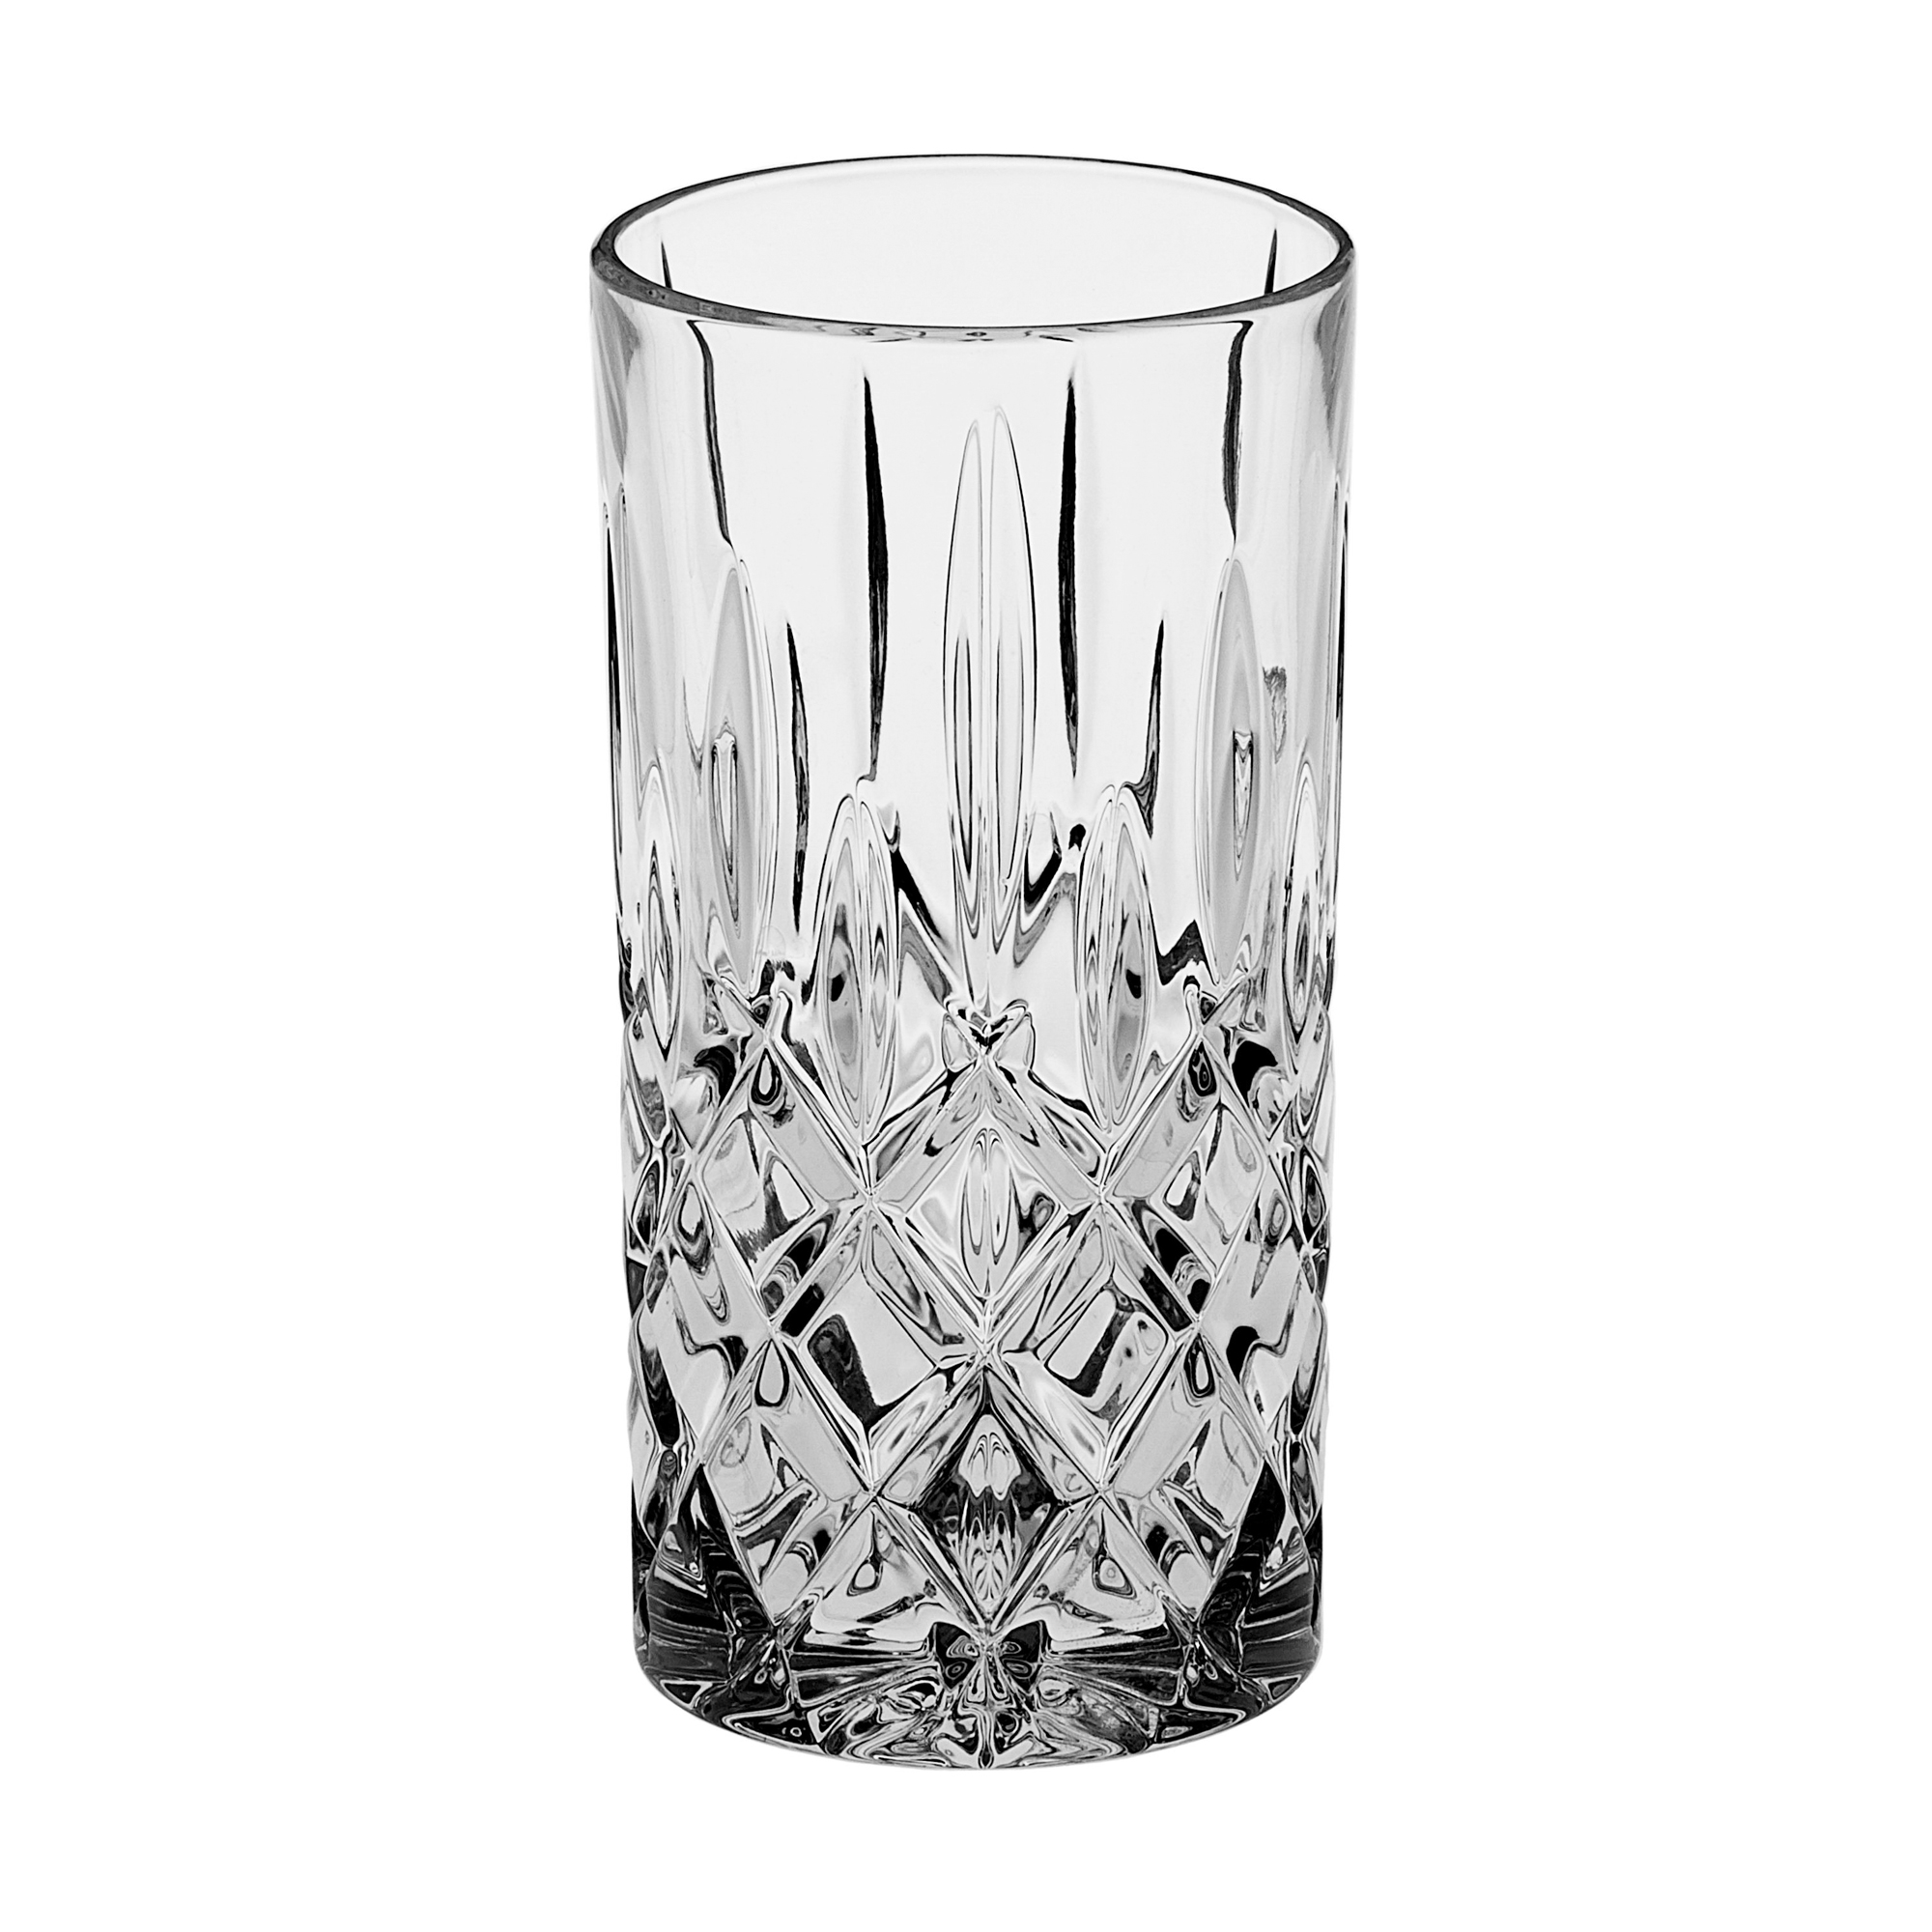 Набор стаканов Crystal bohemia as sheffield 6х350мл (990/21101/0/52820/380-609) набор рюмок для бренди crystal bohemia sheffield 990 12014 0 52820 250 609